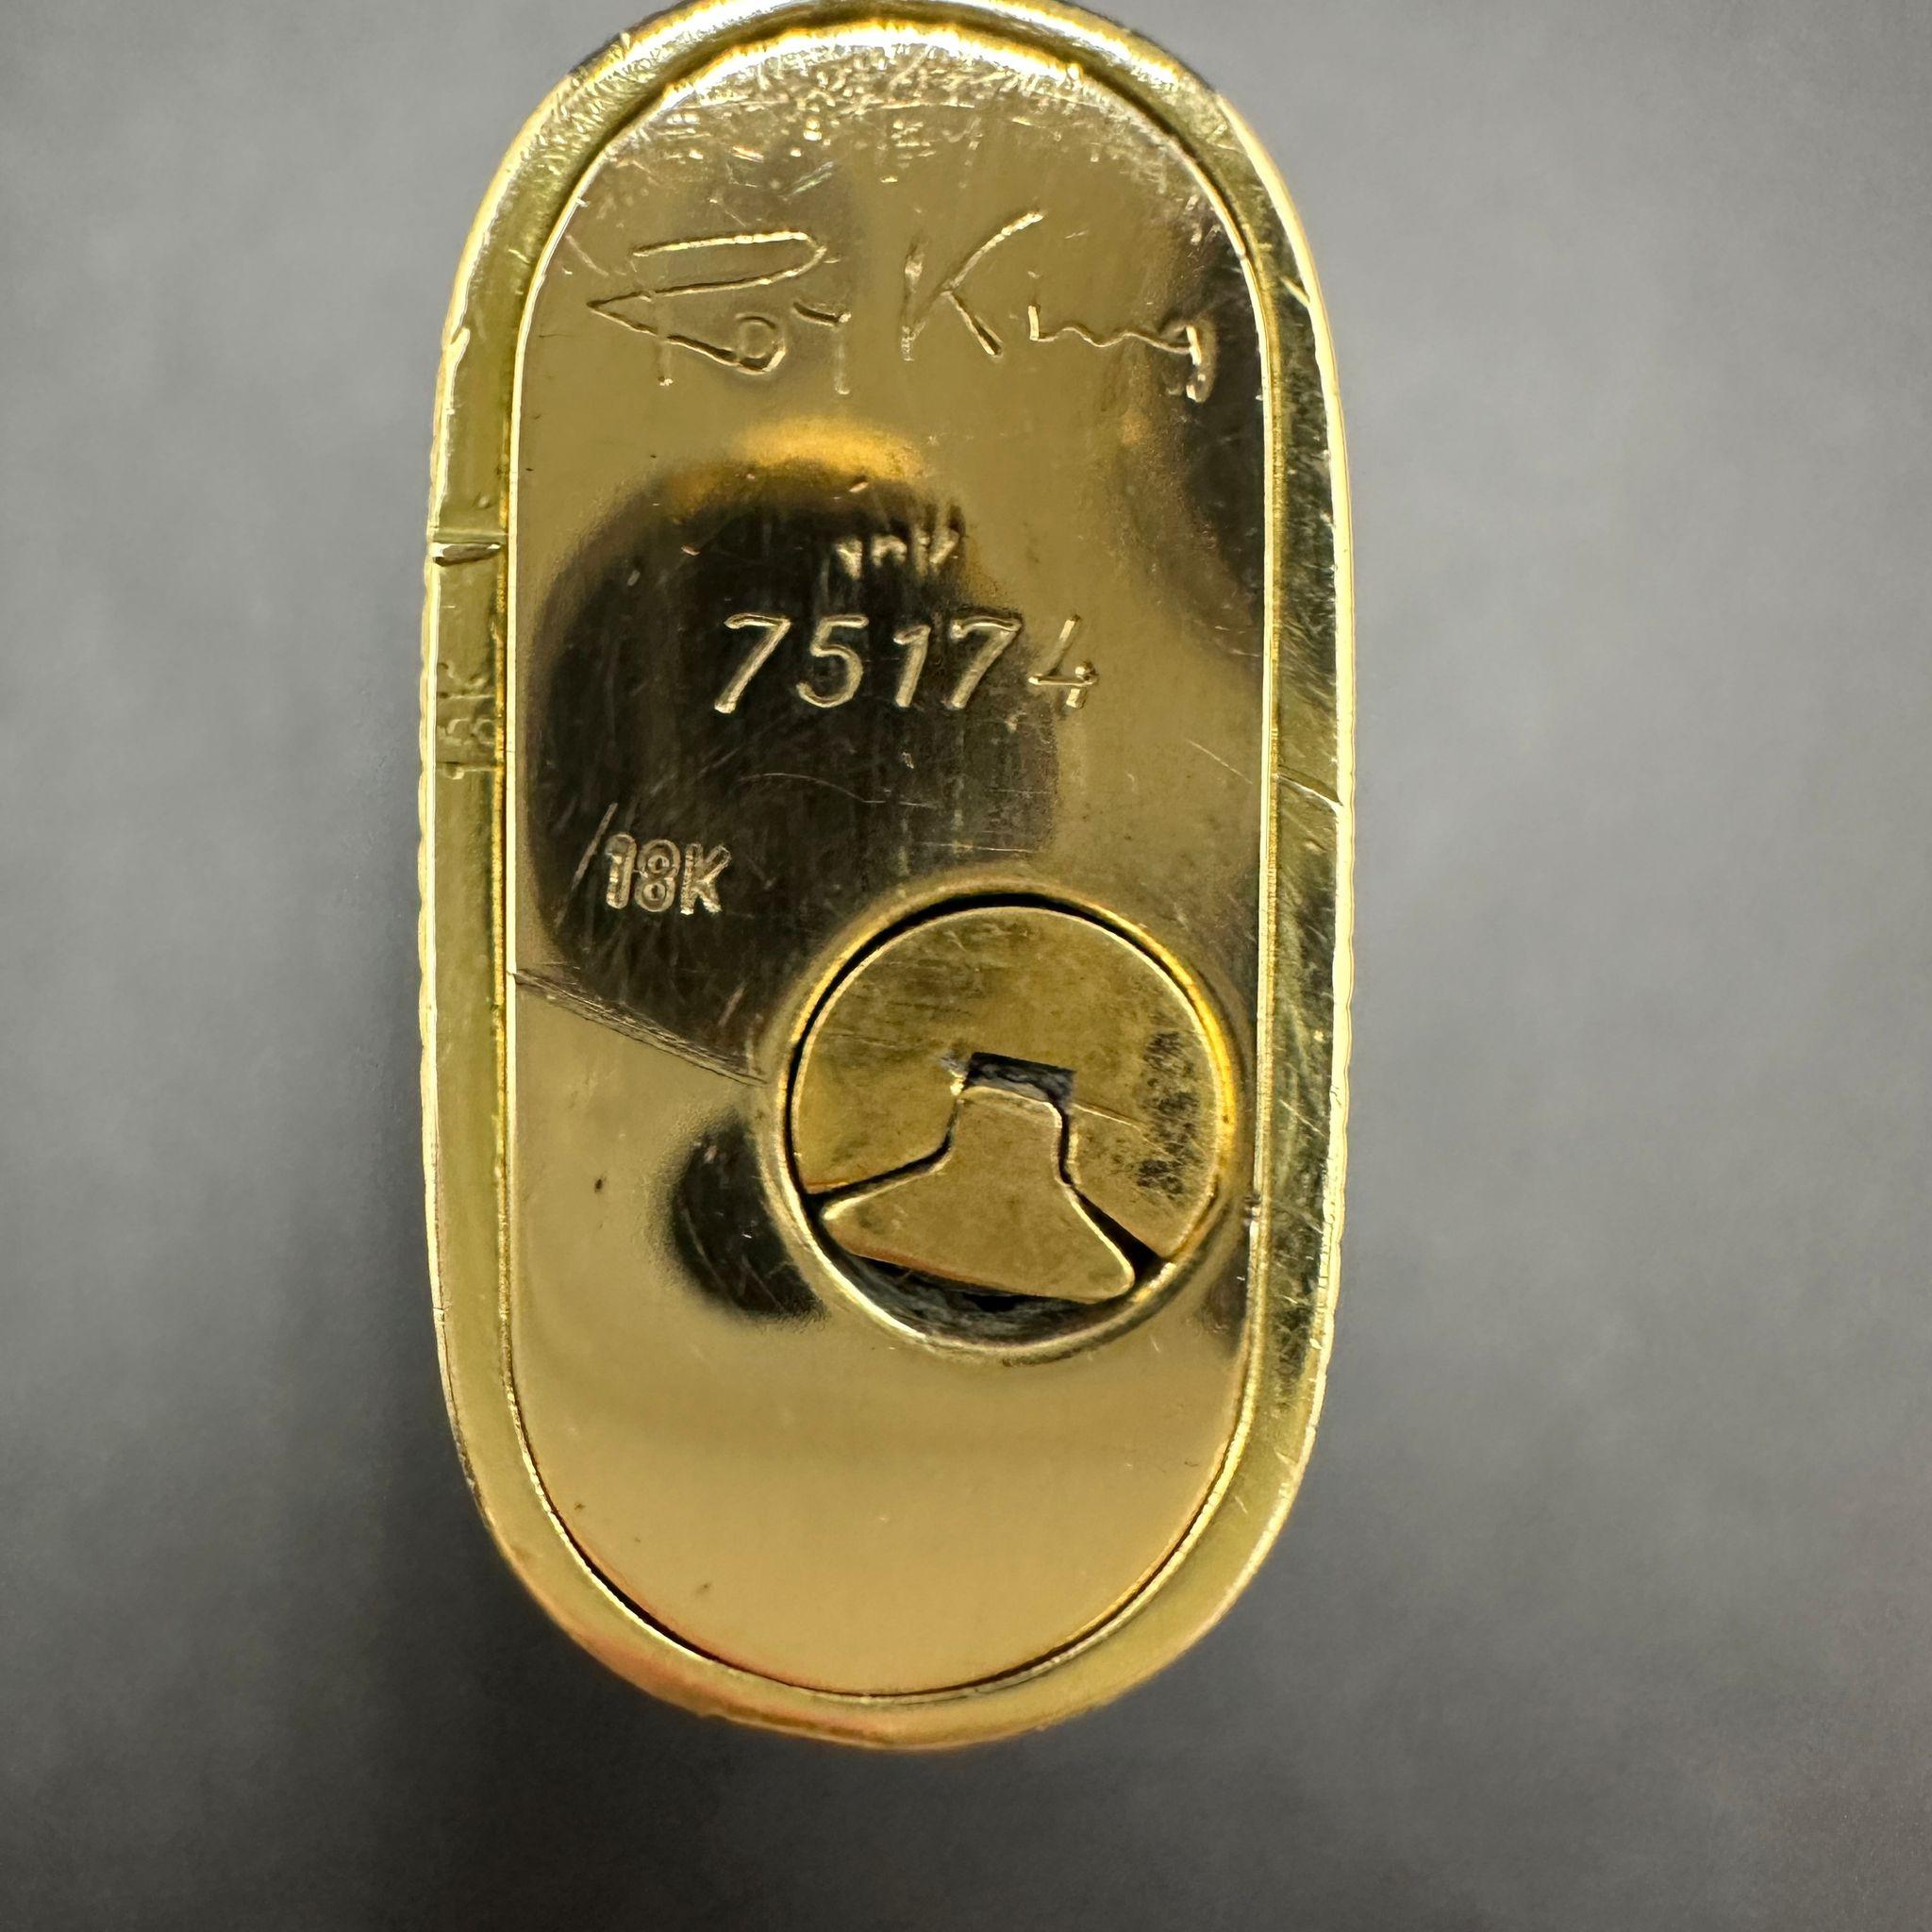 Very Rare Le Must De Cartier “Royking” Lighter, Gold Plated & Enamel, Circa 1980 1